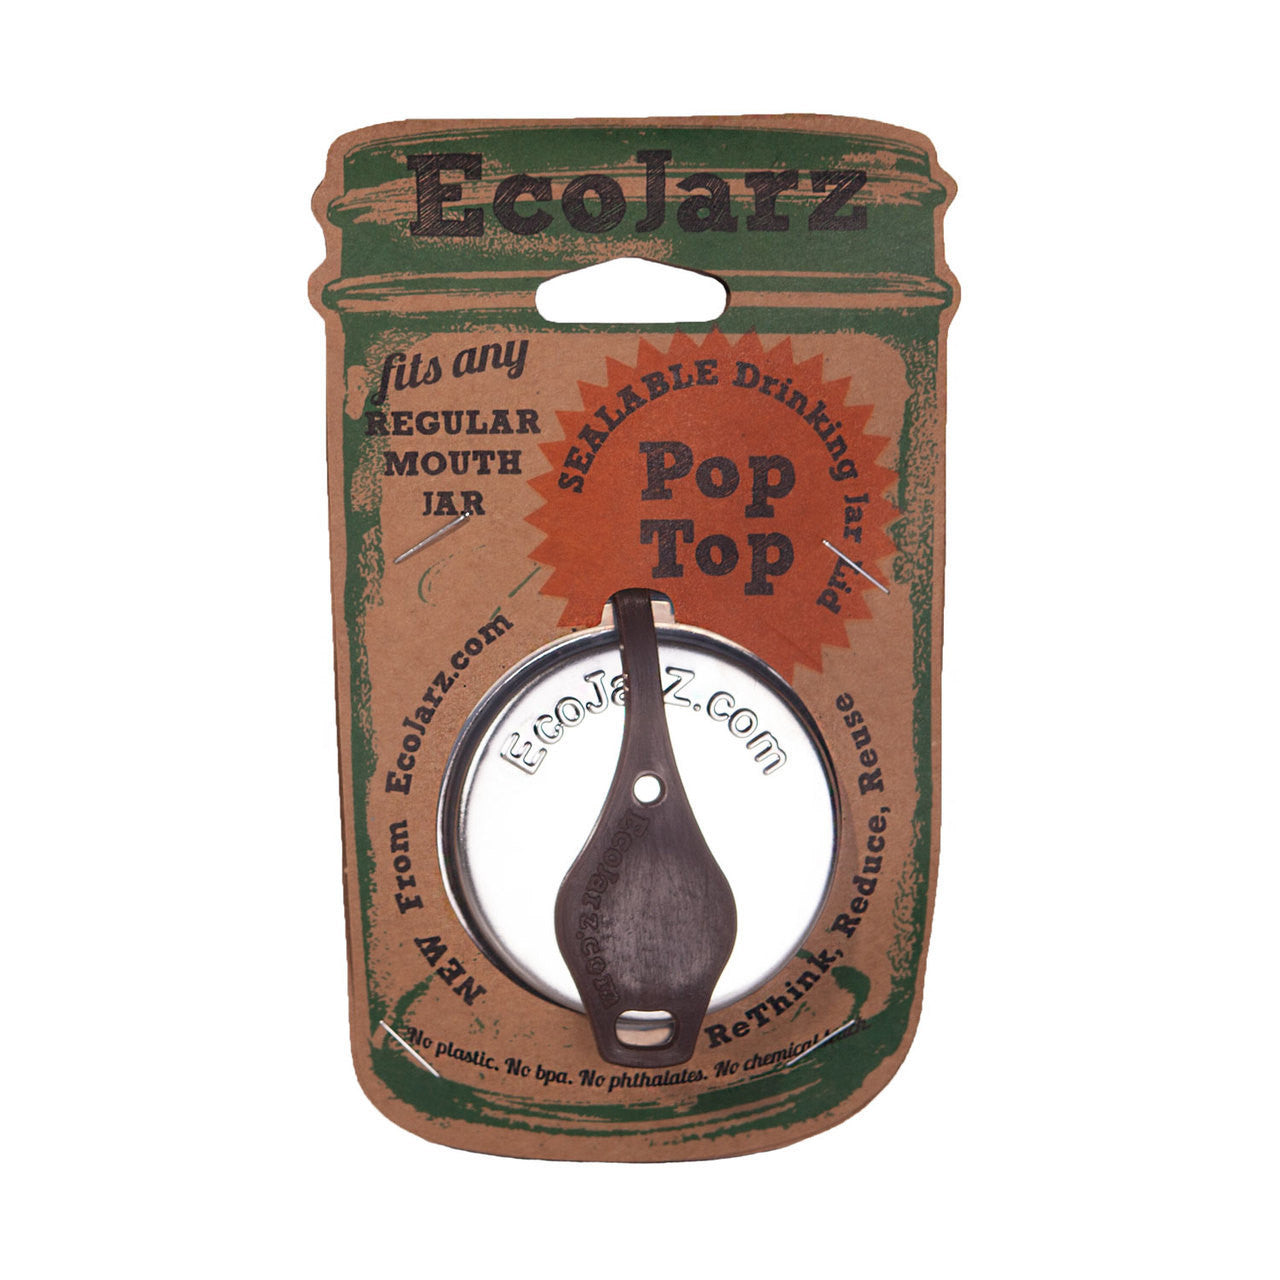 PopTop Sealable Drinking Jar Lid - Regular Mouth